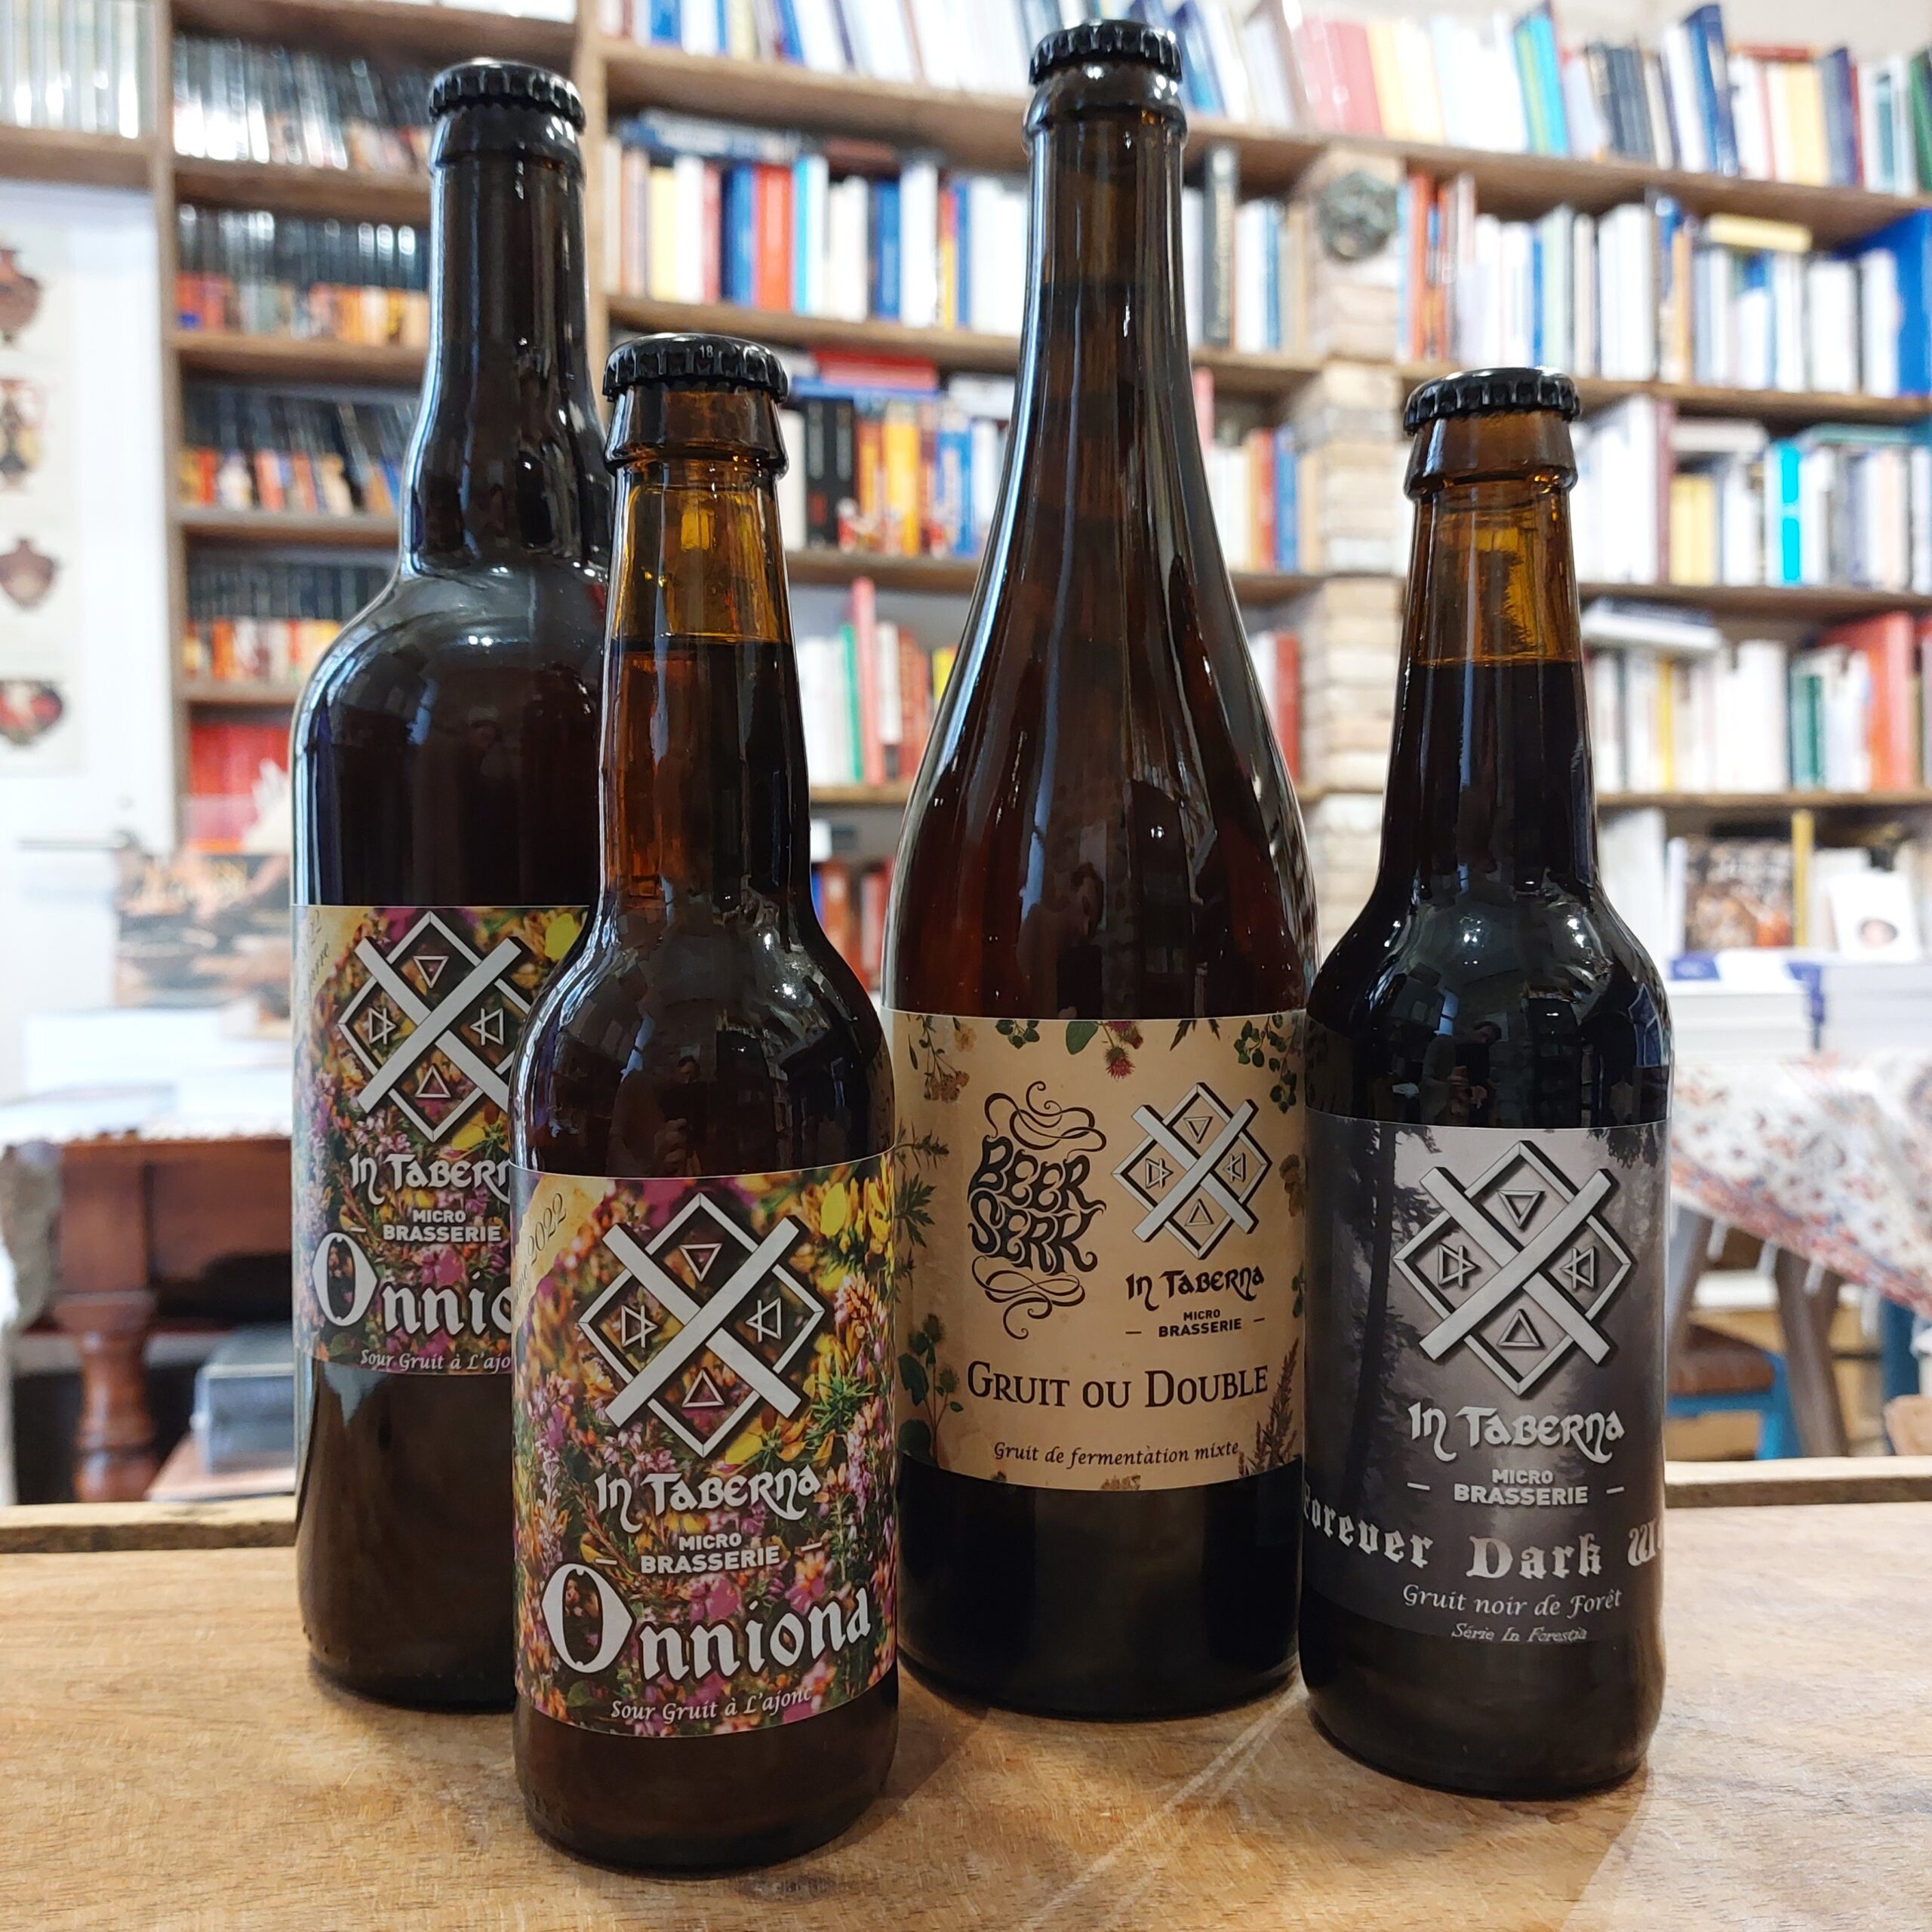 Une collection de bières artisanales régionales - De natura rerum